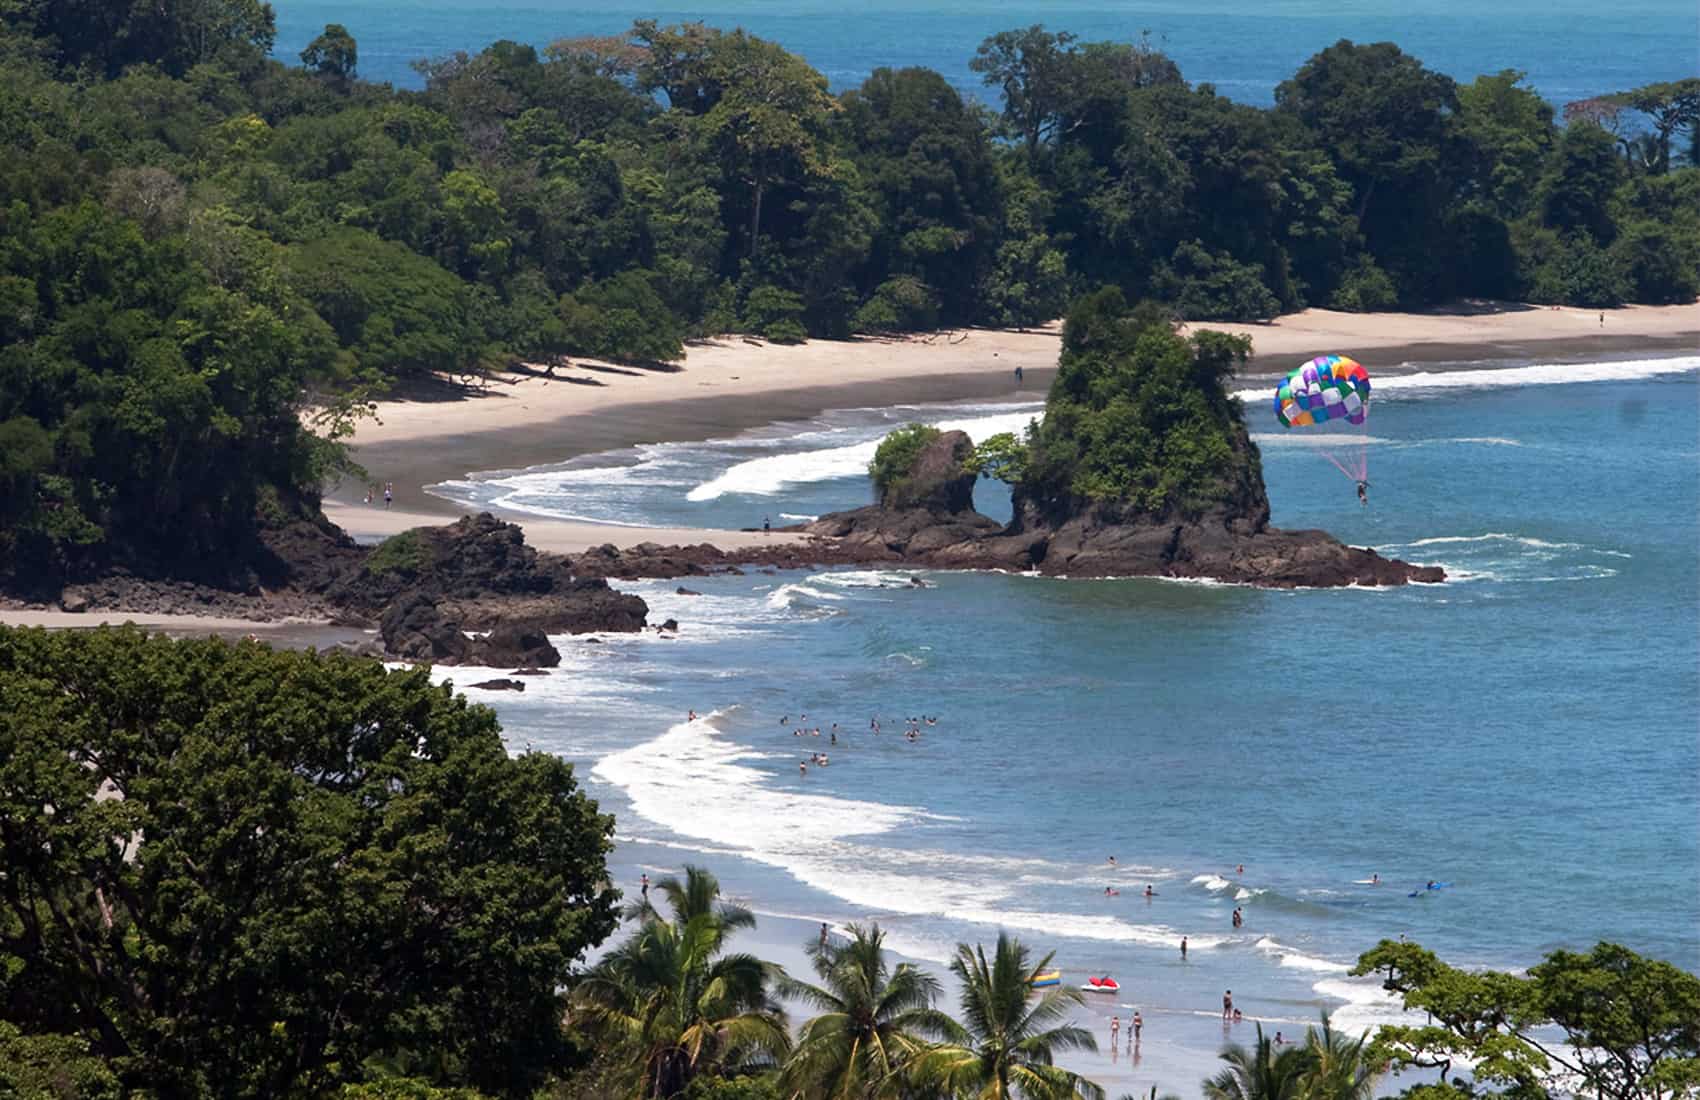 Costa Rica's Central Pacific coast